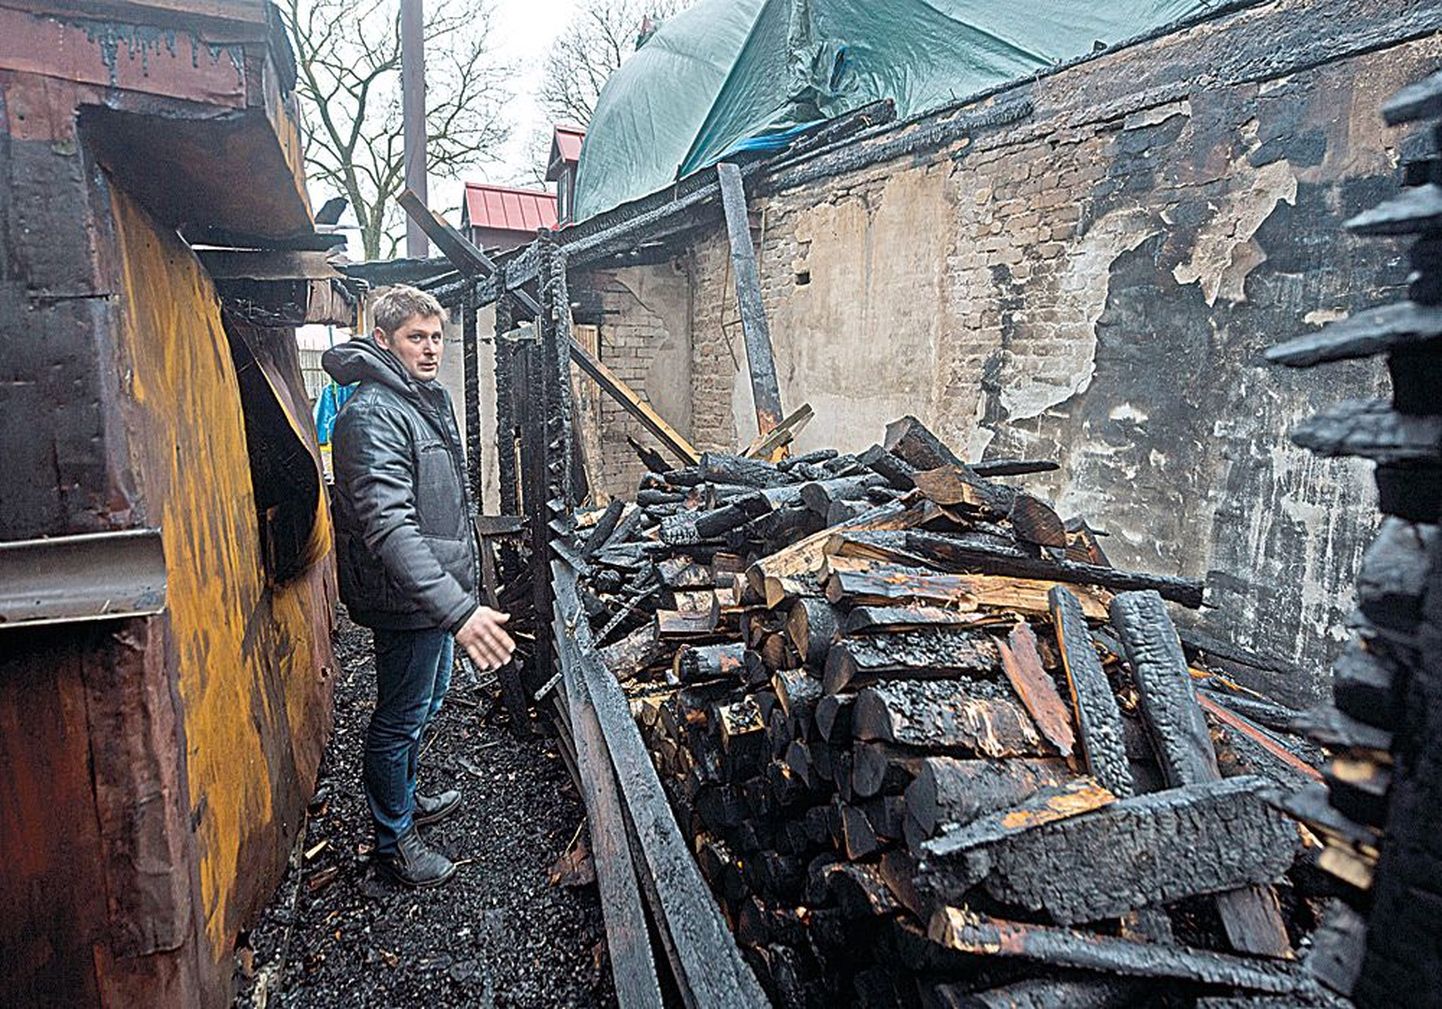 Владелец бара Андрей Кирилов показывает поленницу дров, с которой и начался пожар, влажные поленья сами не могли 
загореться, поэтому он предполагает, что это был поджог.